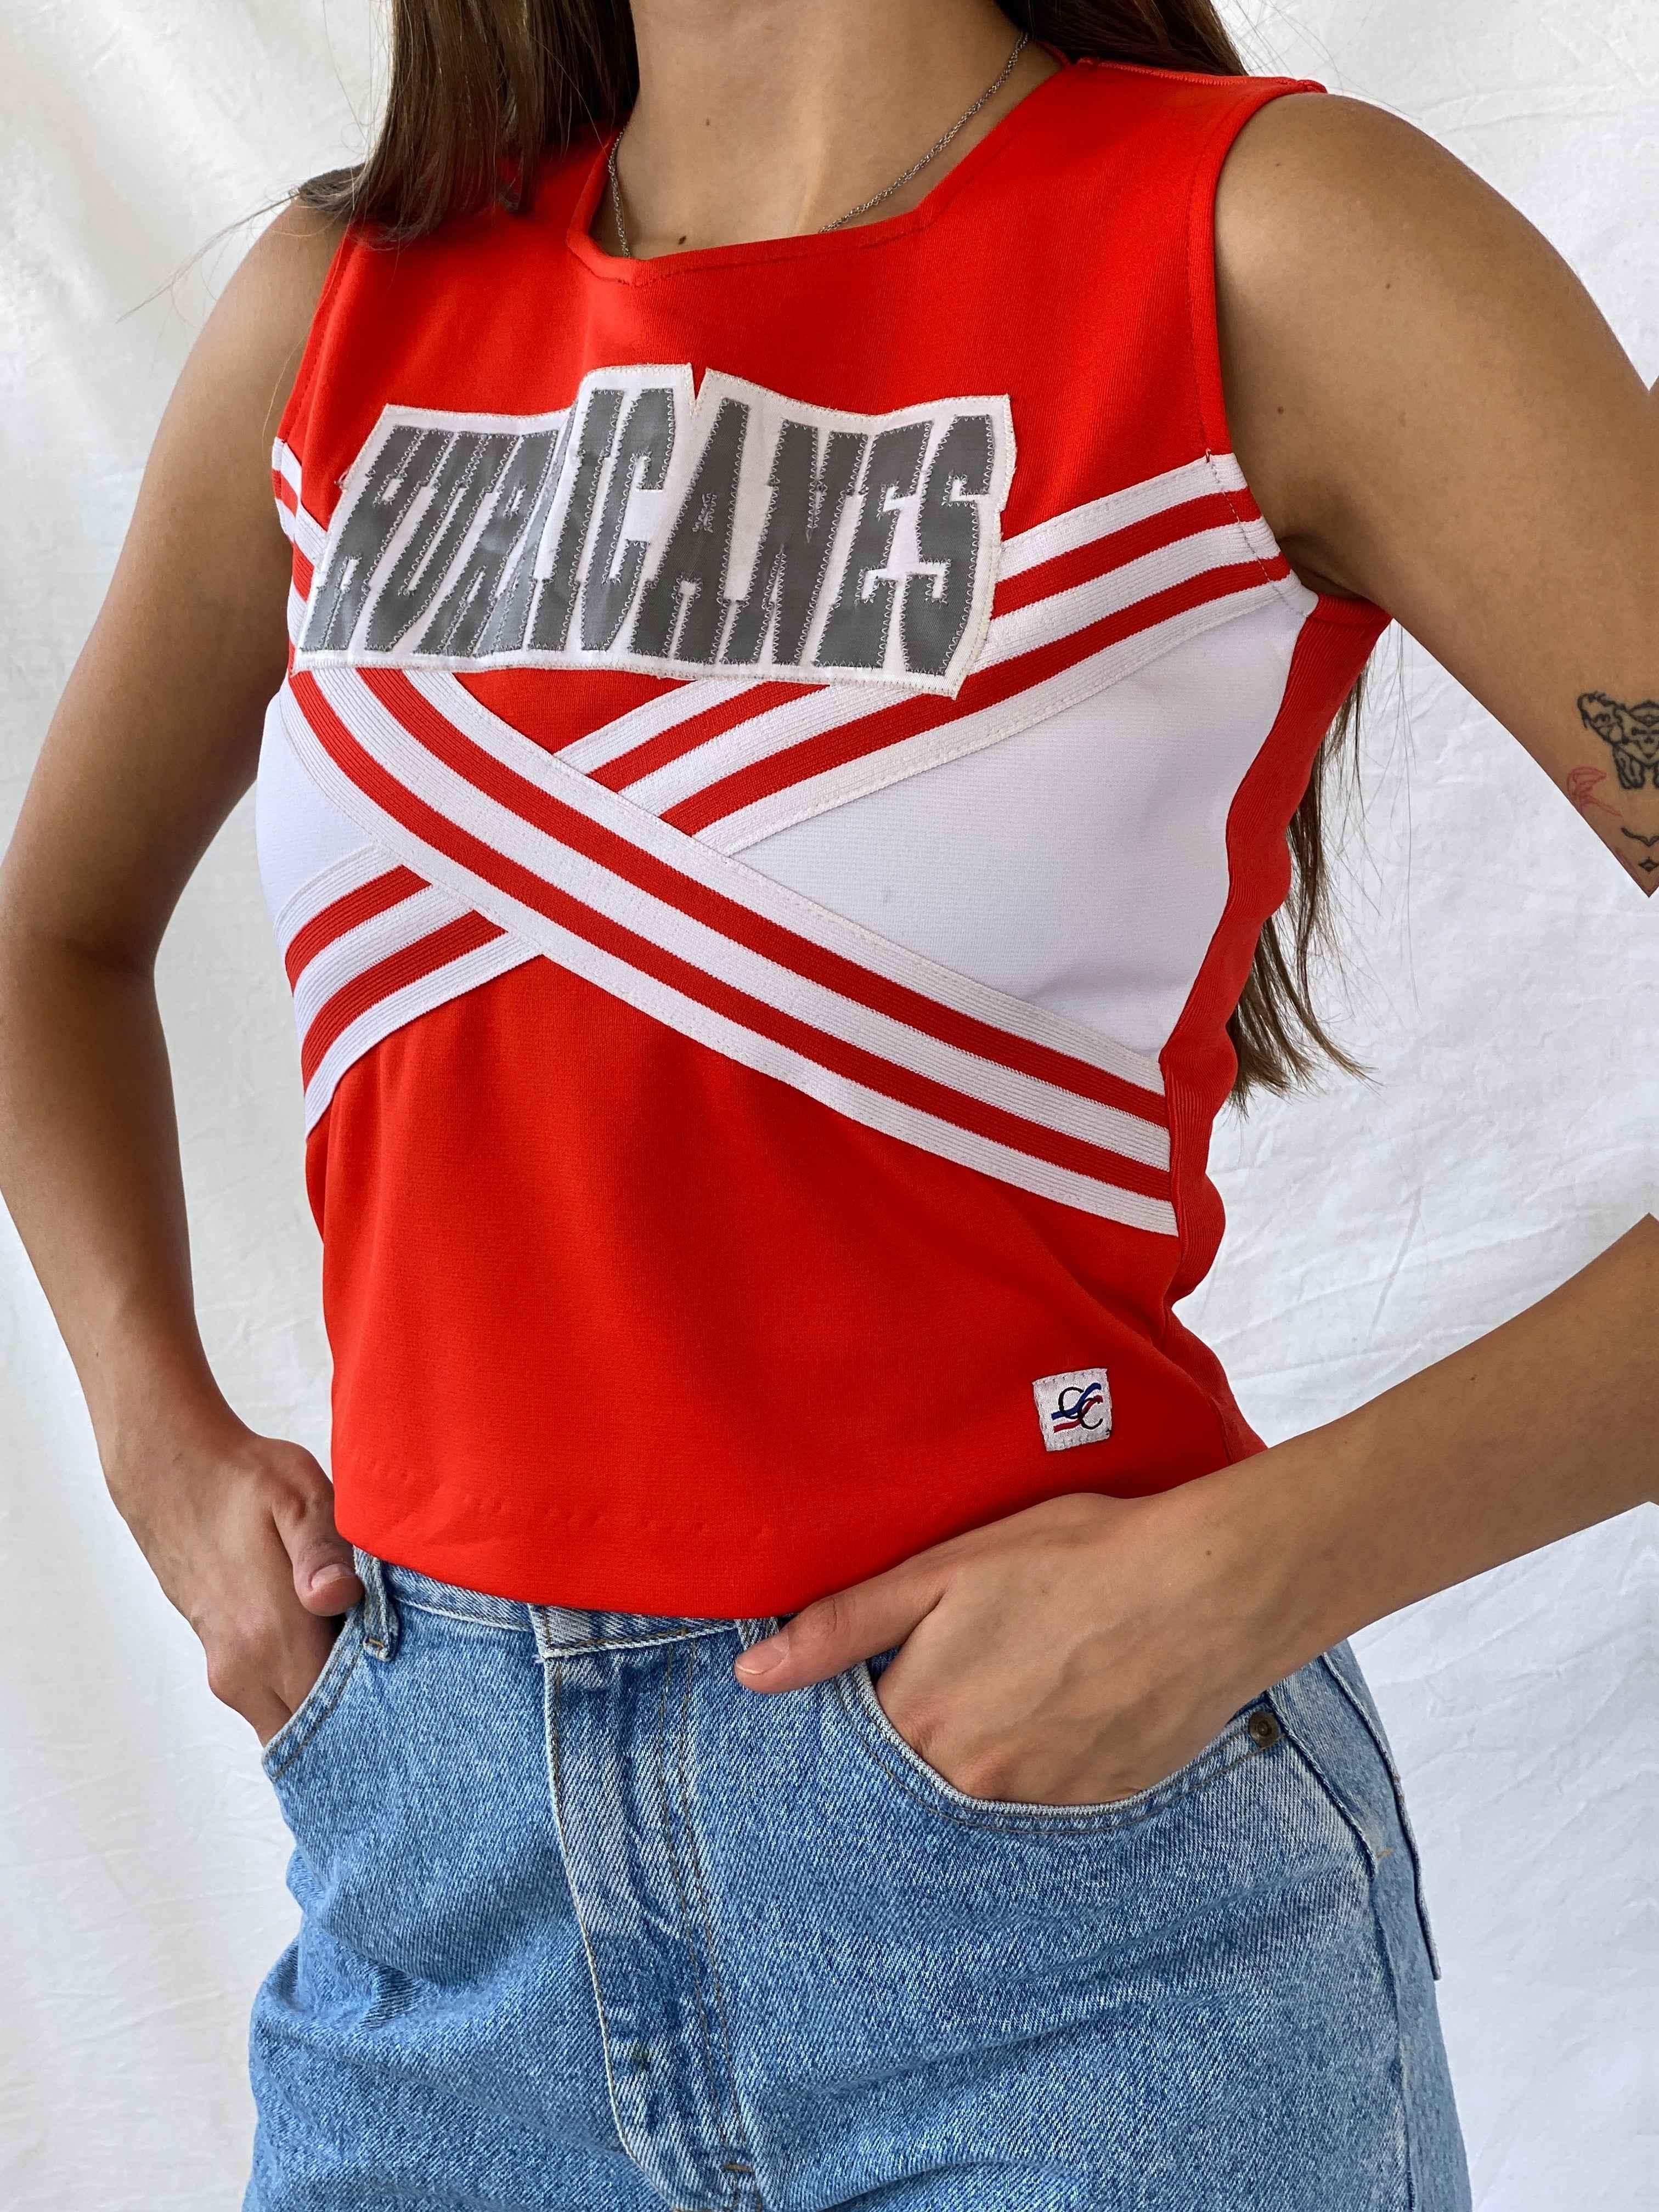 Y2K Orange Cheerleader Top - Balagan Vintage Sleeveless Top 00s, 90s, Mira